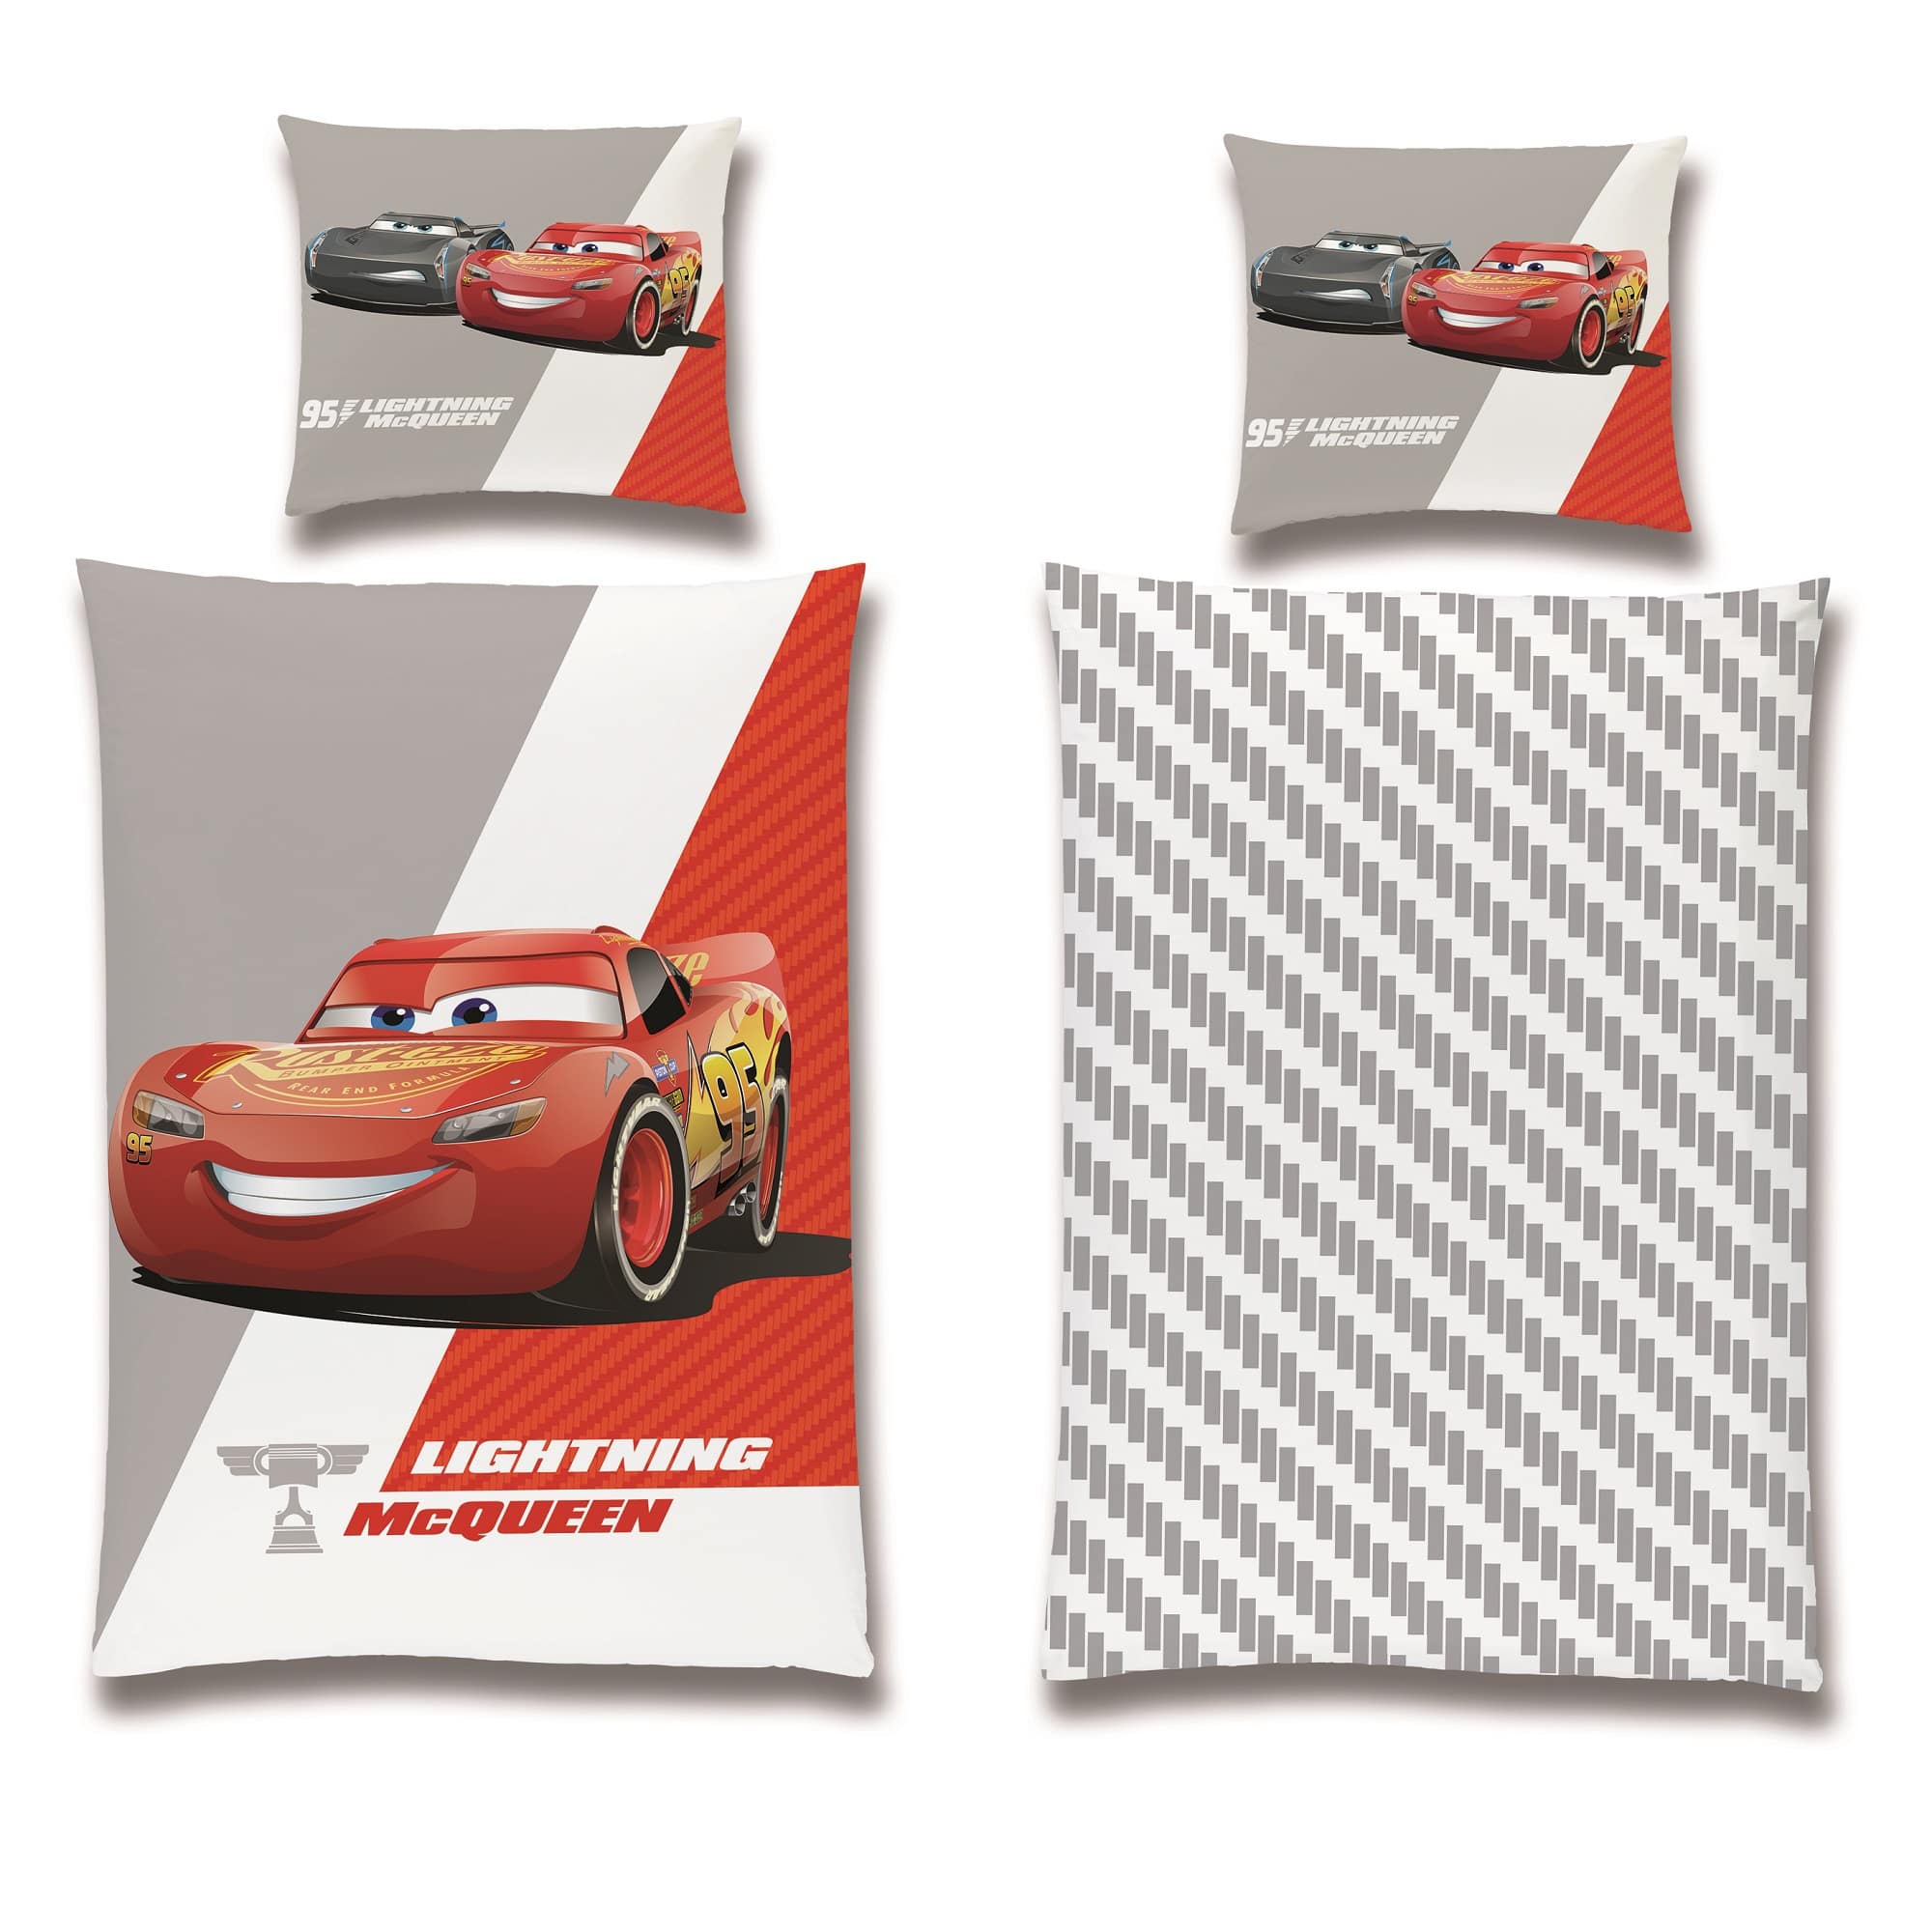 Disney Cars Bettwäsche 135x200 in grau und weiß mit Wendeseite und Reißverschluss